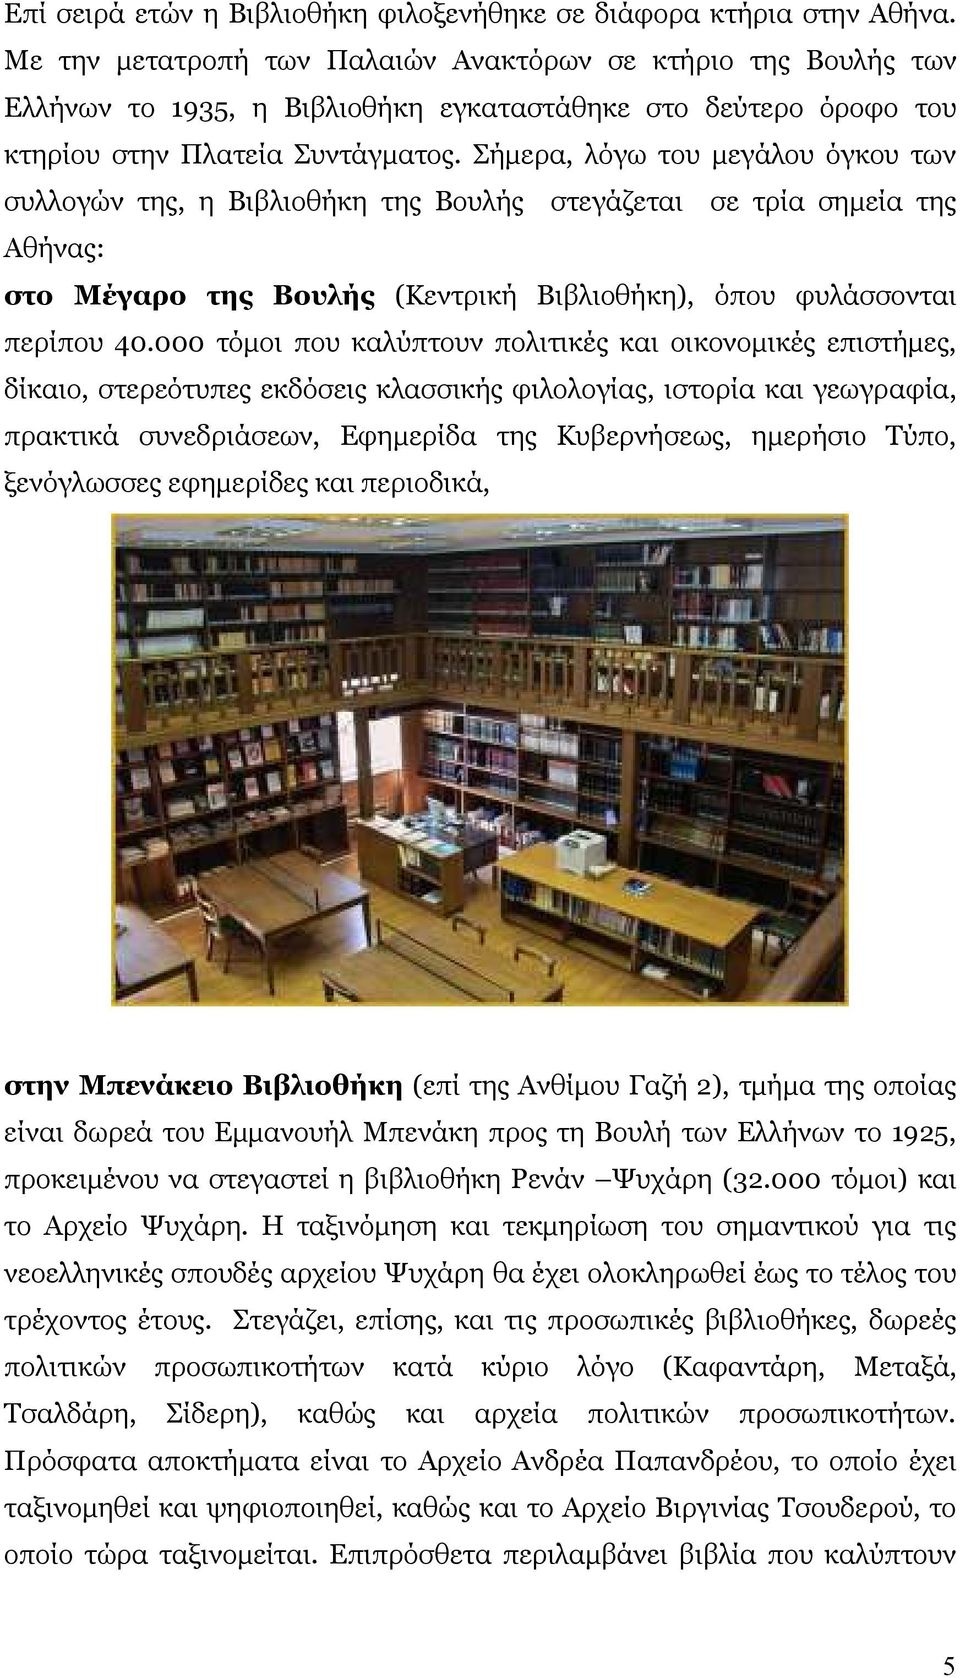 Σήµερα, λόγω του µεγάλου όγκου των συλλογών της, η Βιβλιοθήκη της Βουλής στεγάζεται σε τρία σηµεία της Αθήνας: στο Μέγαρο της Βουλής (Κεντρική Βιβλιοθήκη), όπου φυλάσσονται περίπου 40.